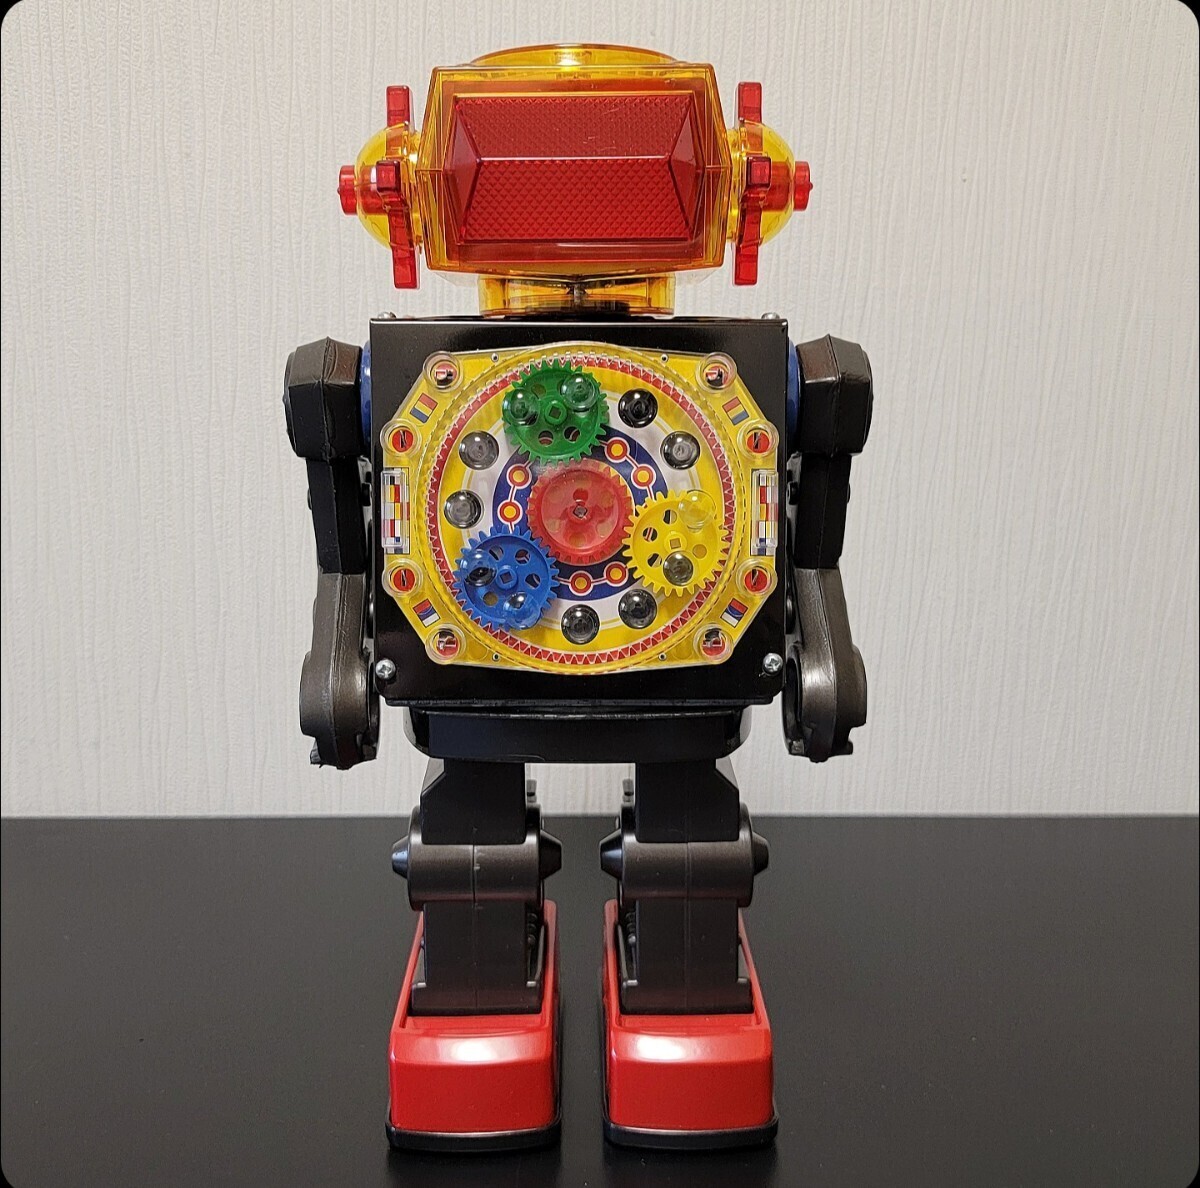 【ヨネザワ玩具・メカロボ】《オリジナル箱付き・古い当時物・ブリキ・プラスチック・ロボット・日本製・米沢玩具》の画像2